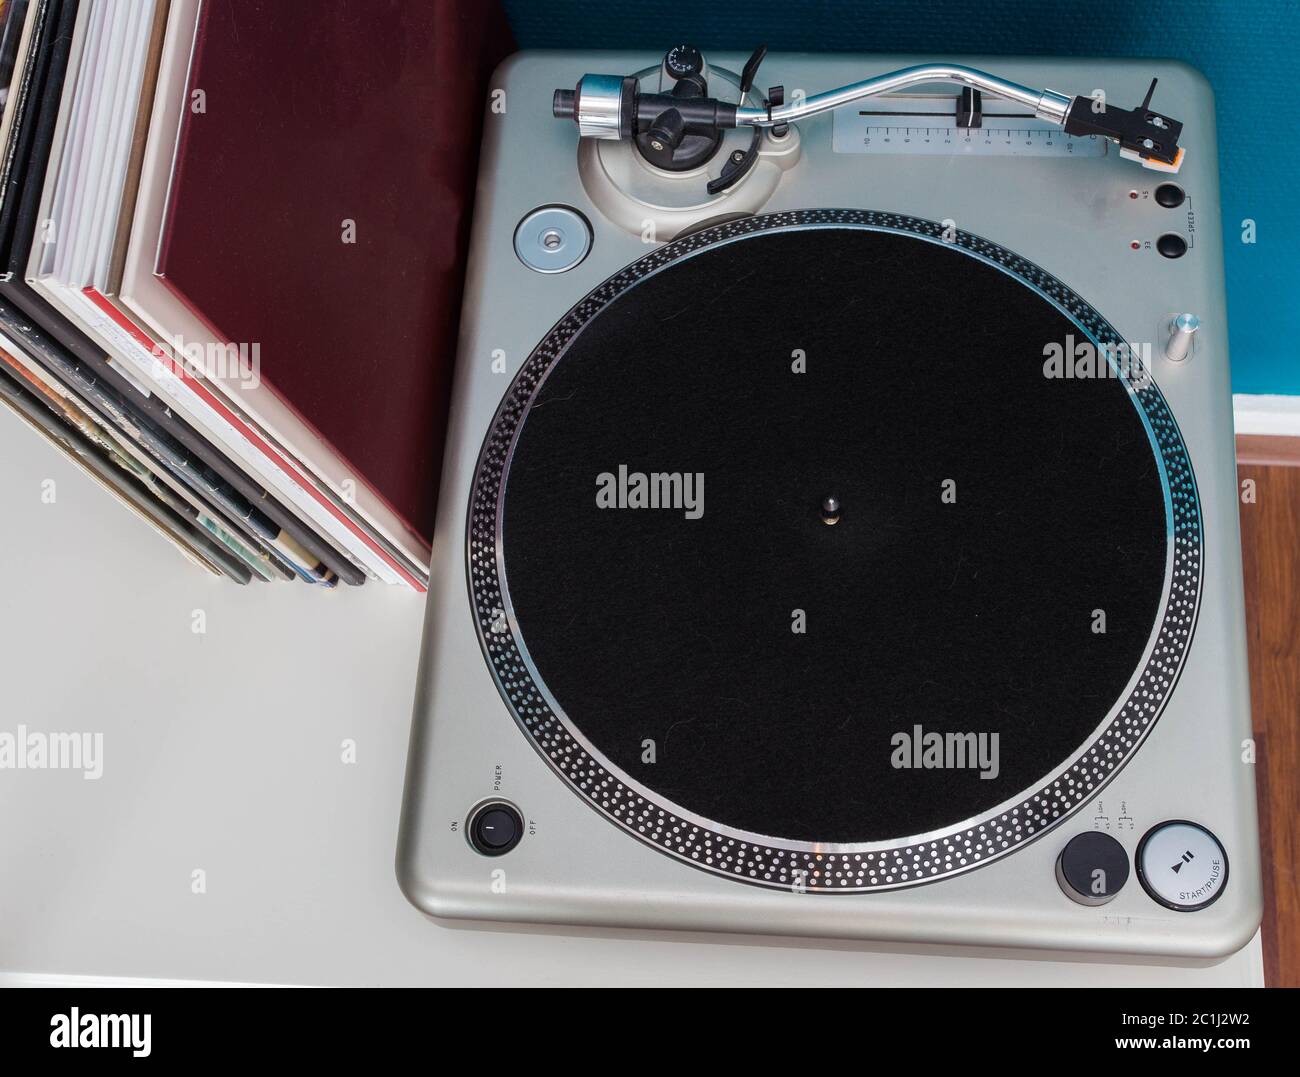 Platine stéréo vintage lecteur de disques vinyle avec de vieux lps sur une étagère Banque D'Images